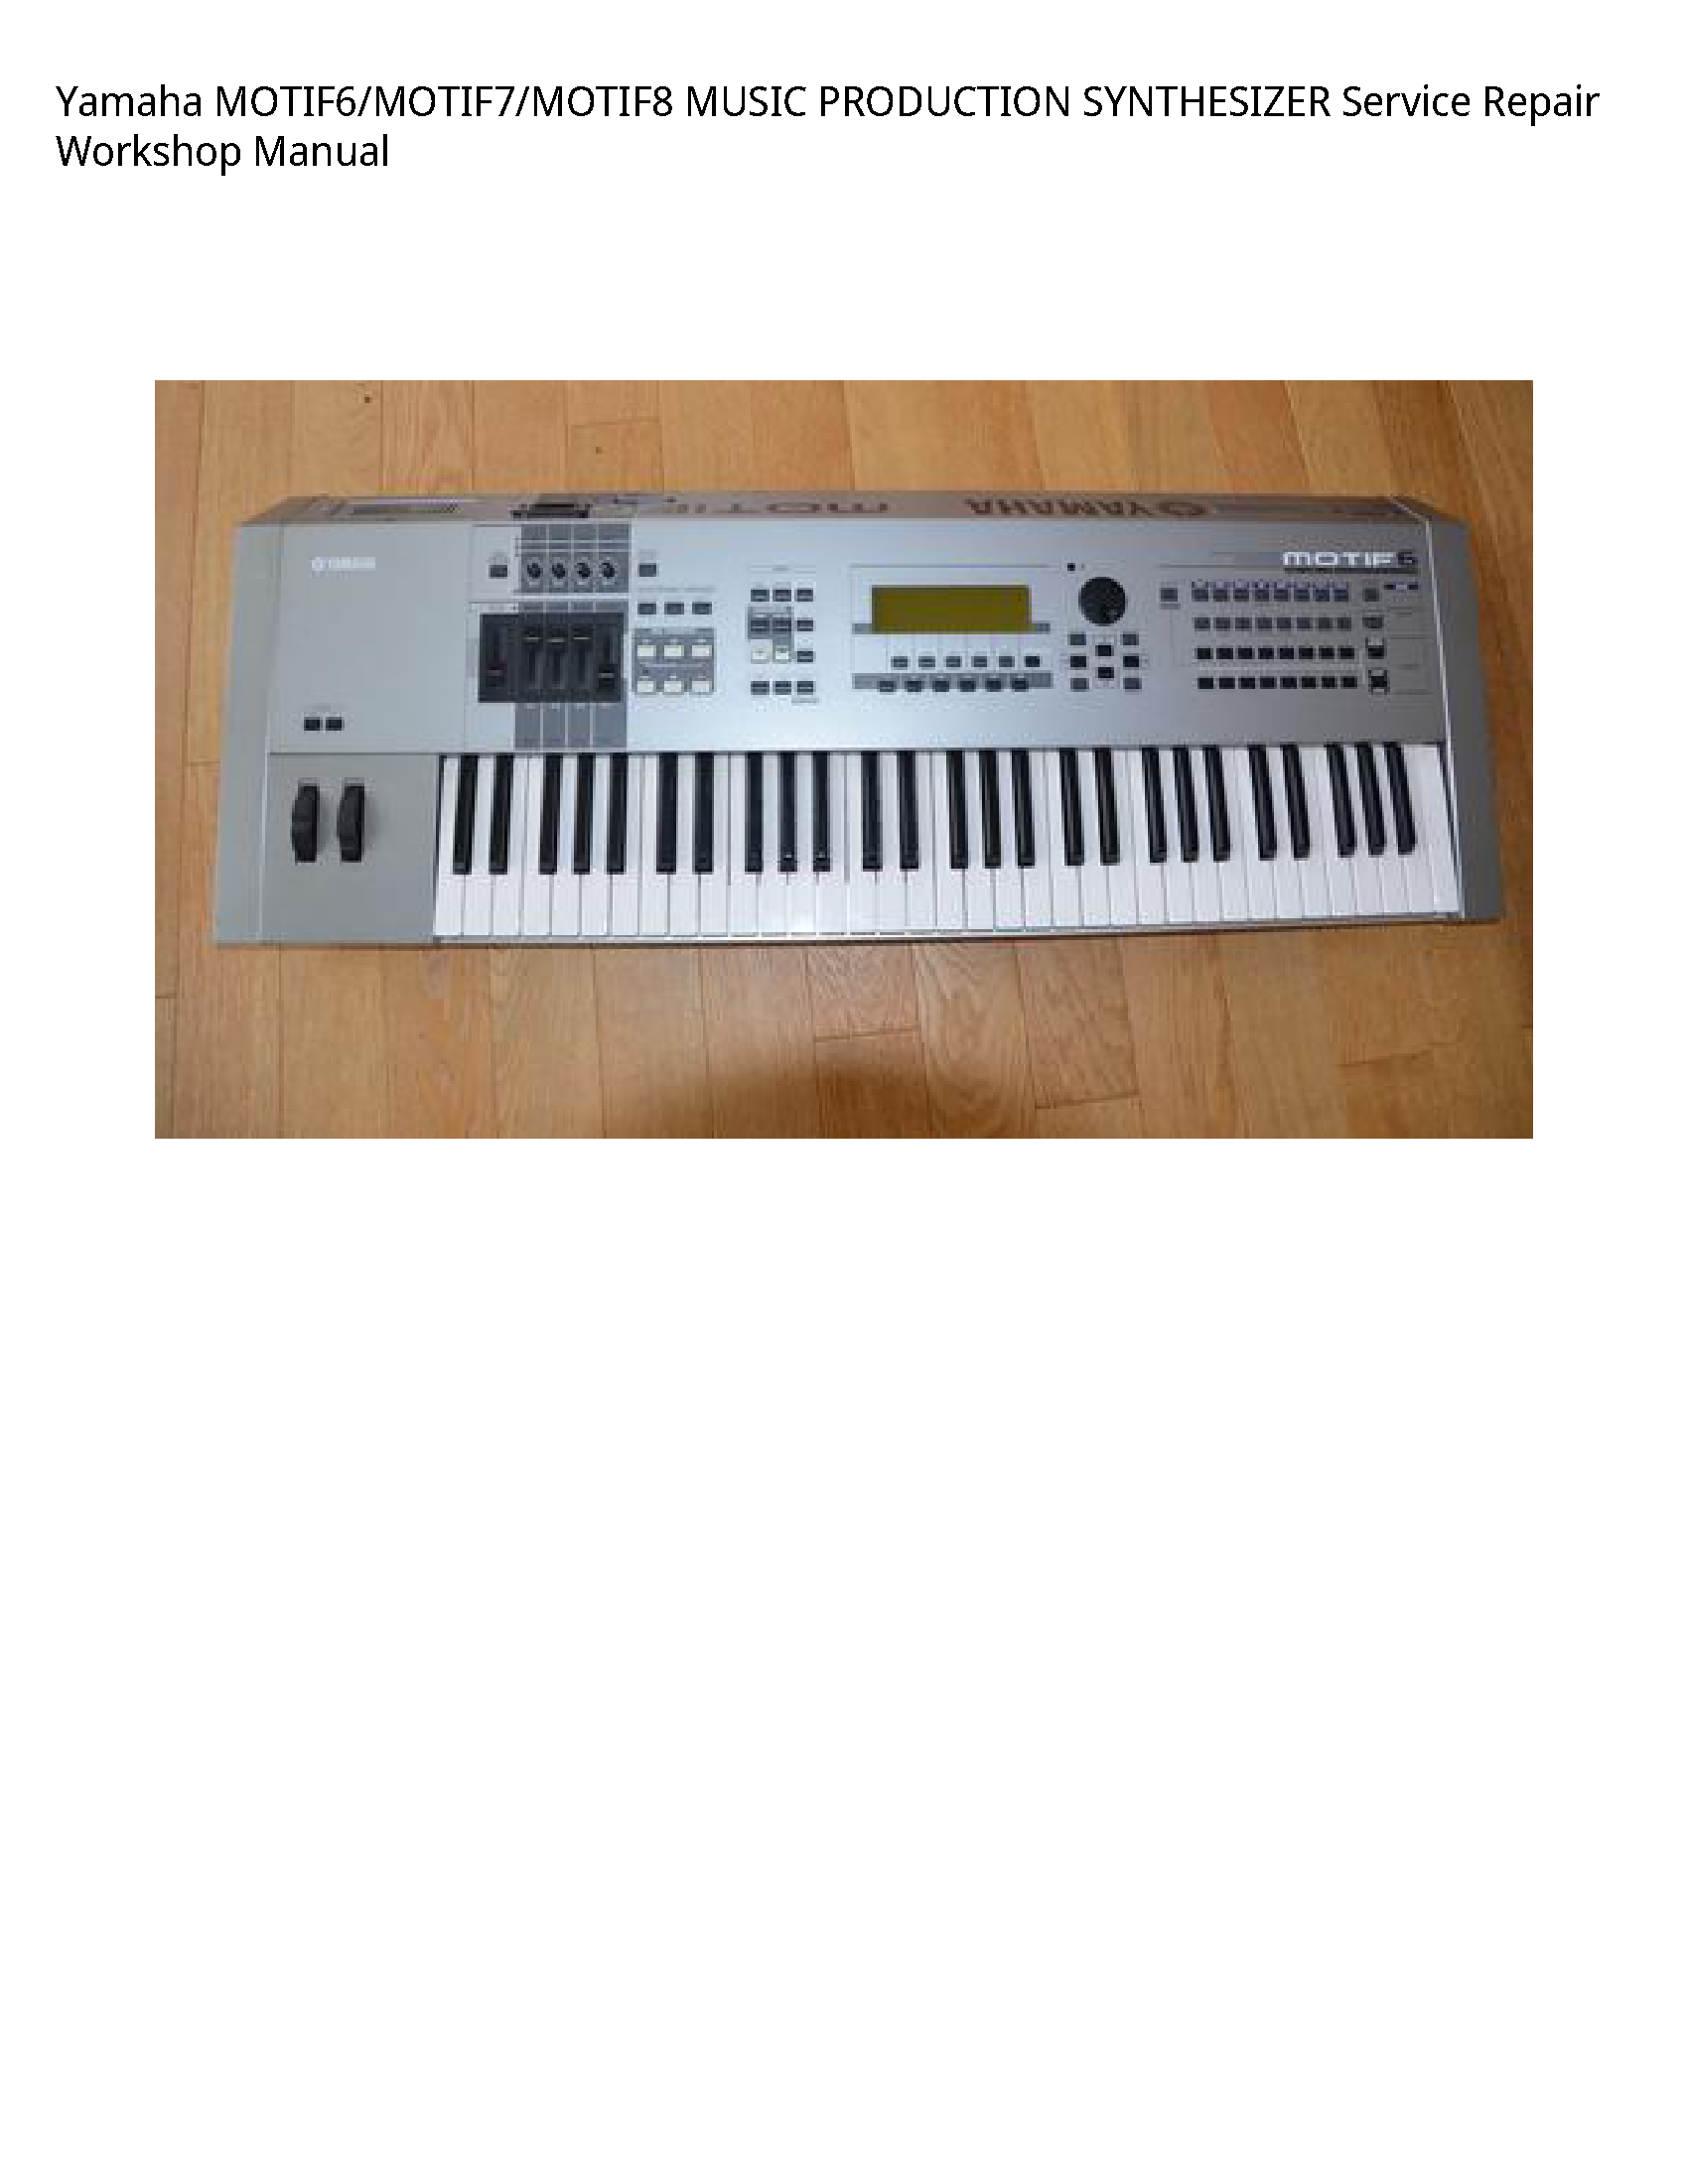 Yamaha MOTIF6 MUSIC PRODUCTION SYNTHESIZER manual